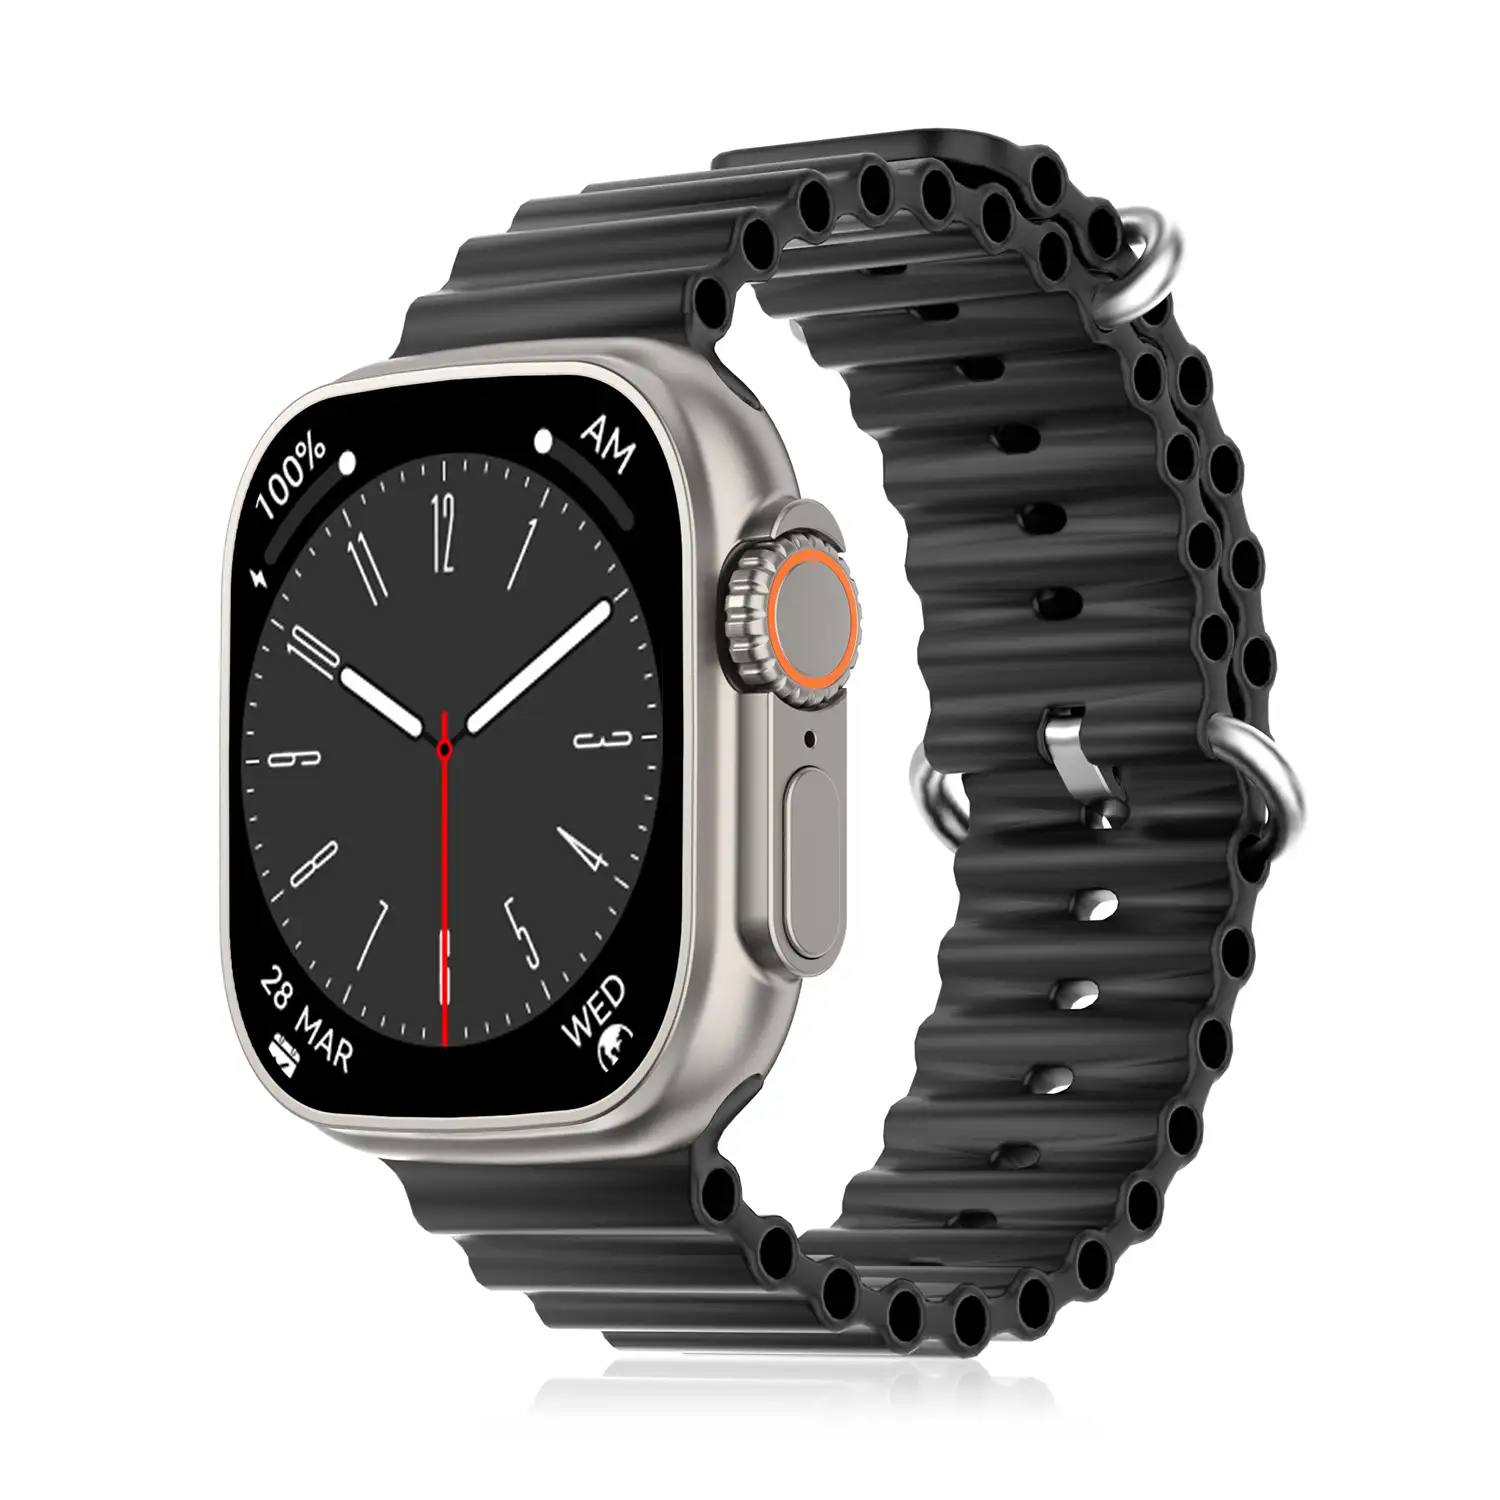 Smartwatch DT8 Ultra con pantalla de 2.0 pulgadas HR y función Always-On display. Widgets personalizables. Correa Sea band.